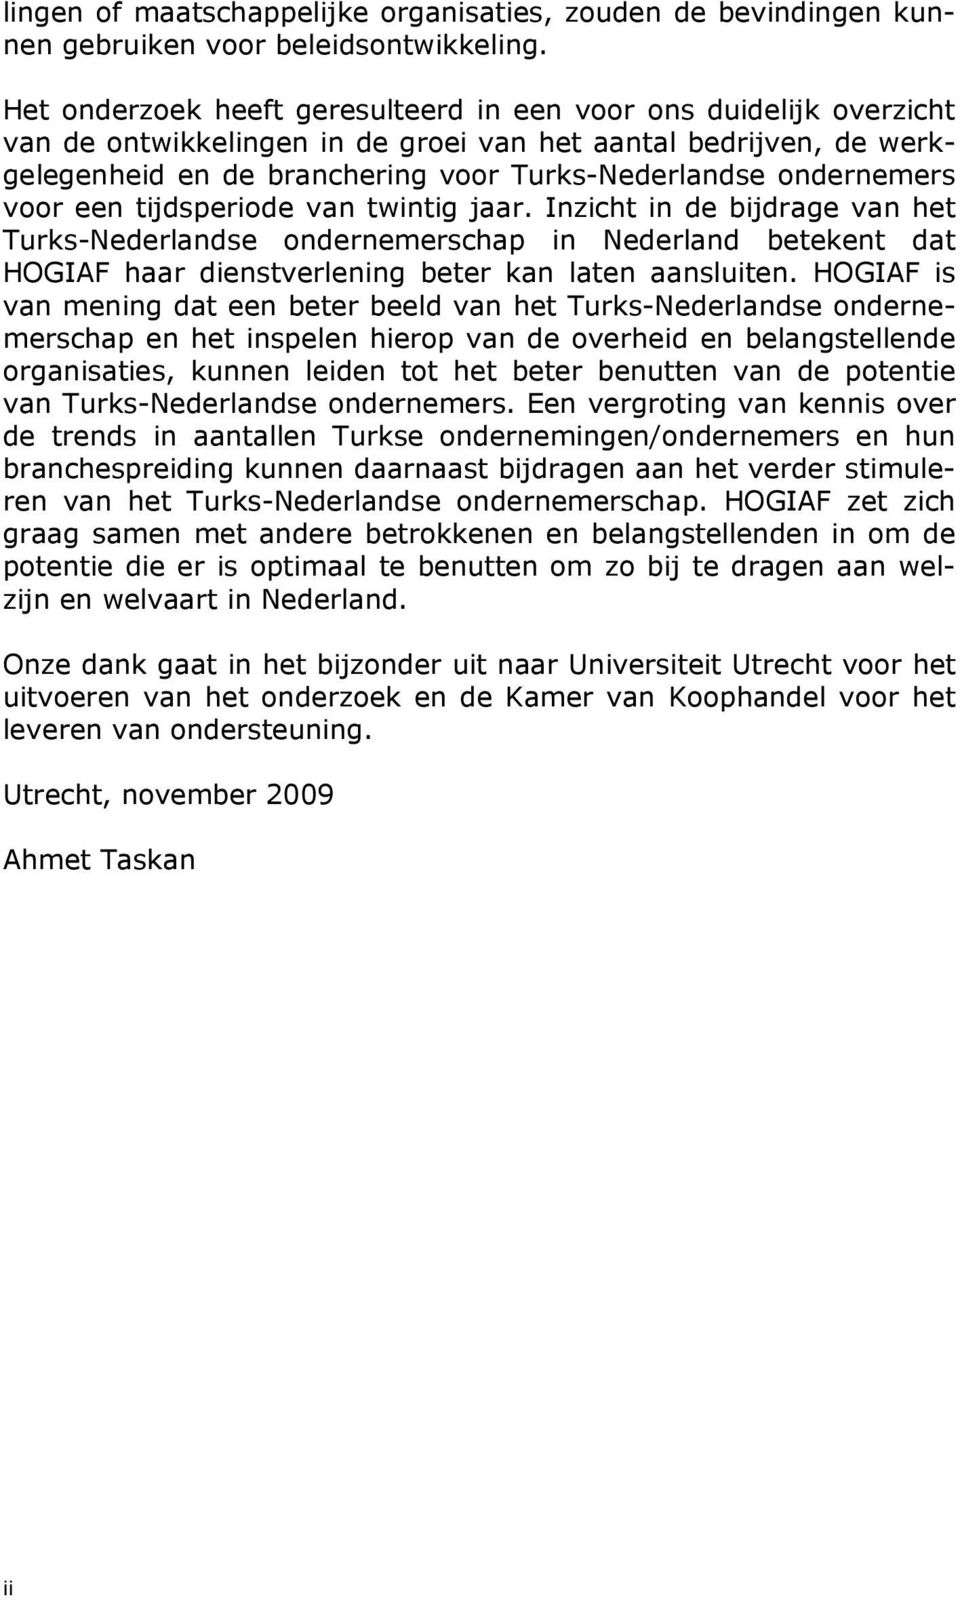 ondernemers voor een tijdsperiode van twintig jaar. Inzicht in de bijdrage van het Turks-Nederlandse ondernemerschap in Nederland betekent dat HOGIAF haar dienstverlening beter kan laten aansluiten.